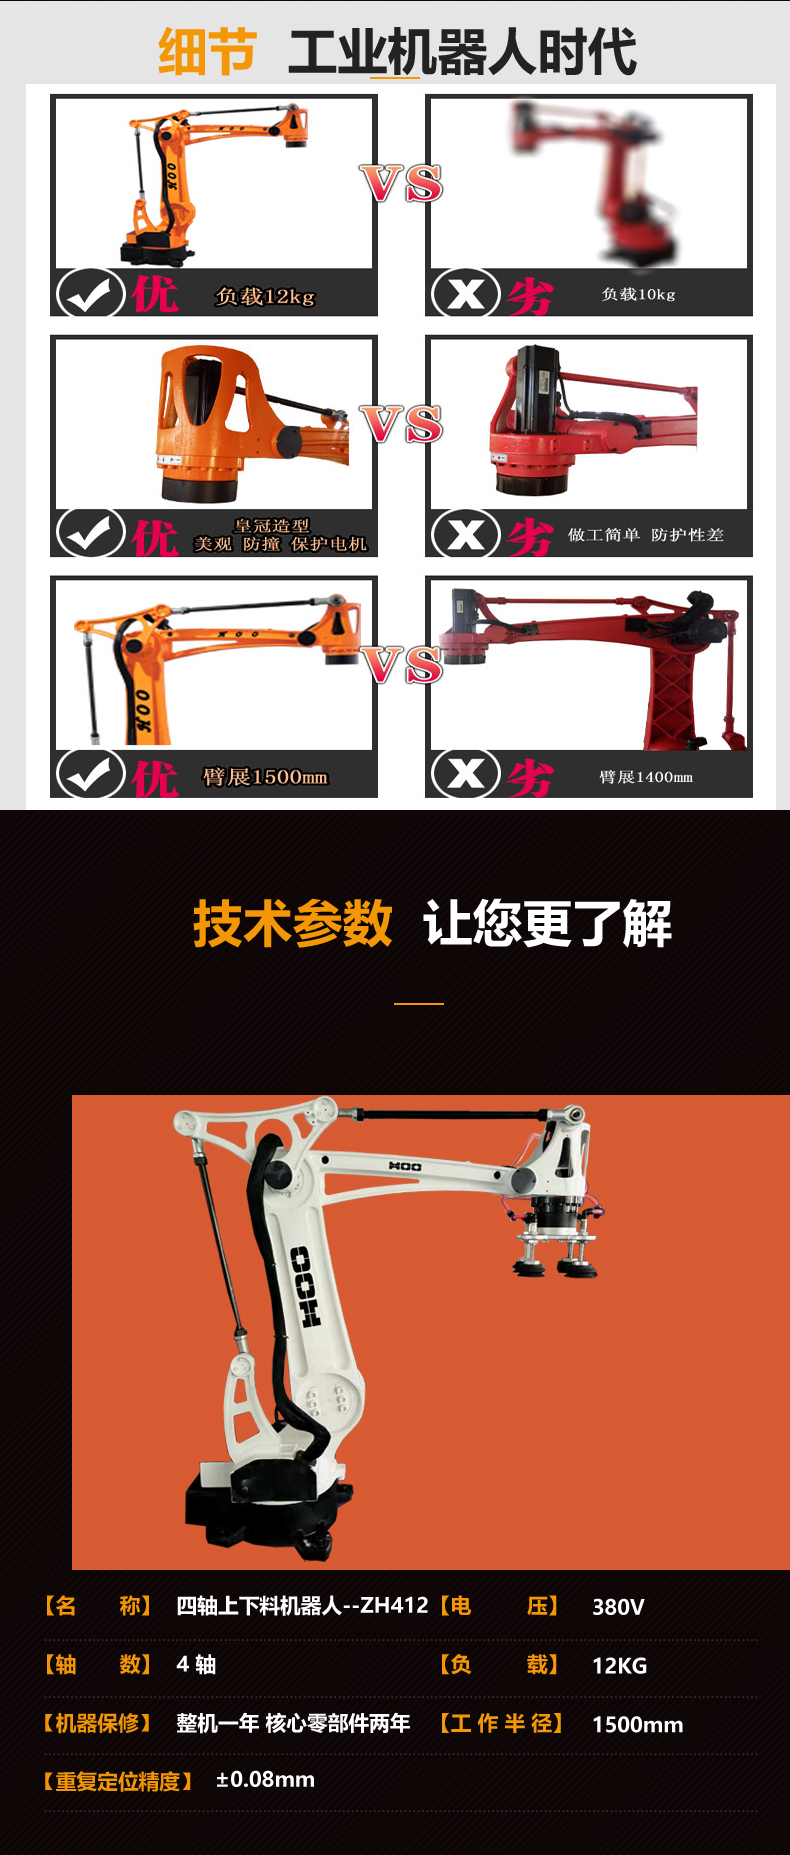 上海三用冲压机器人价格